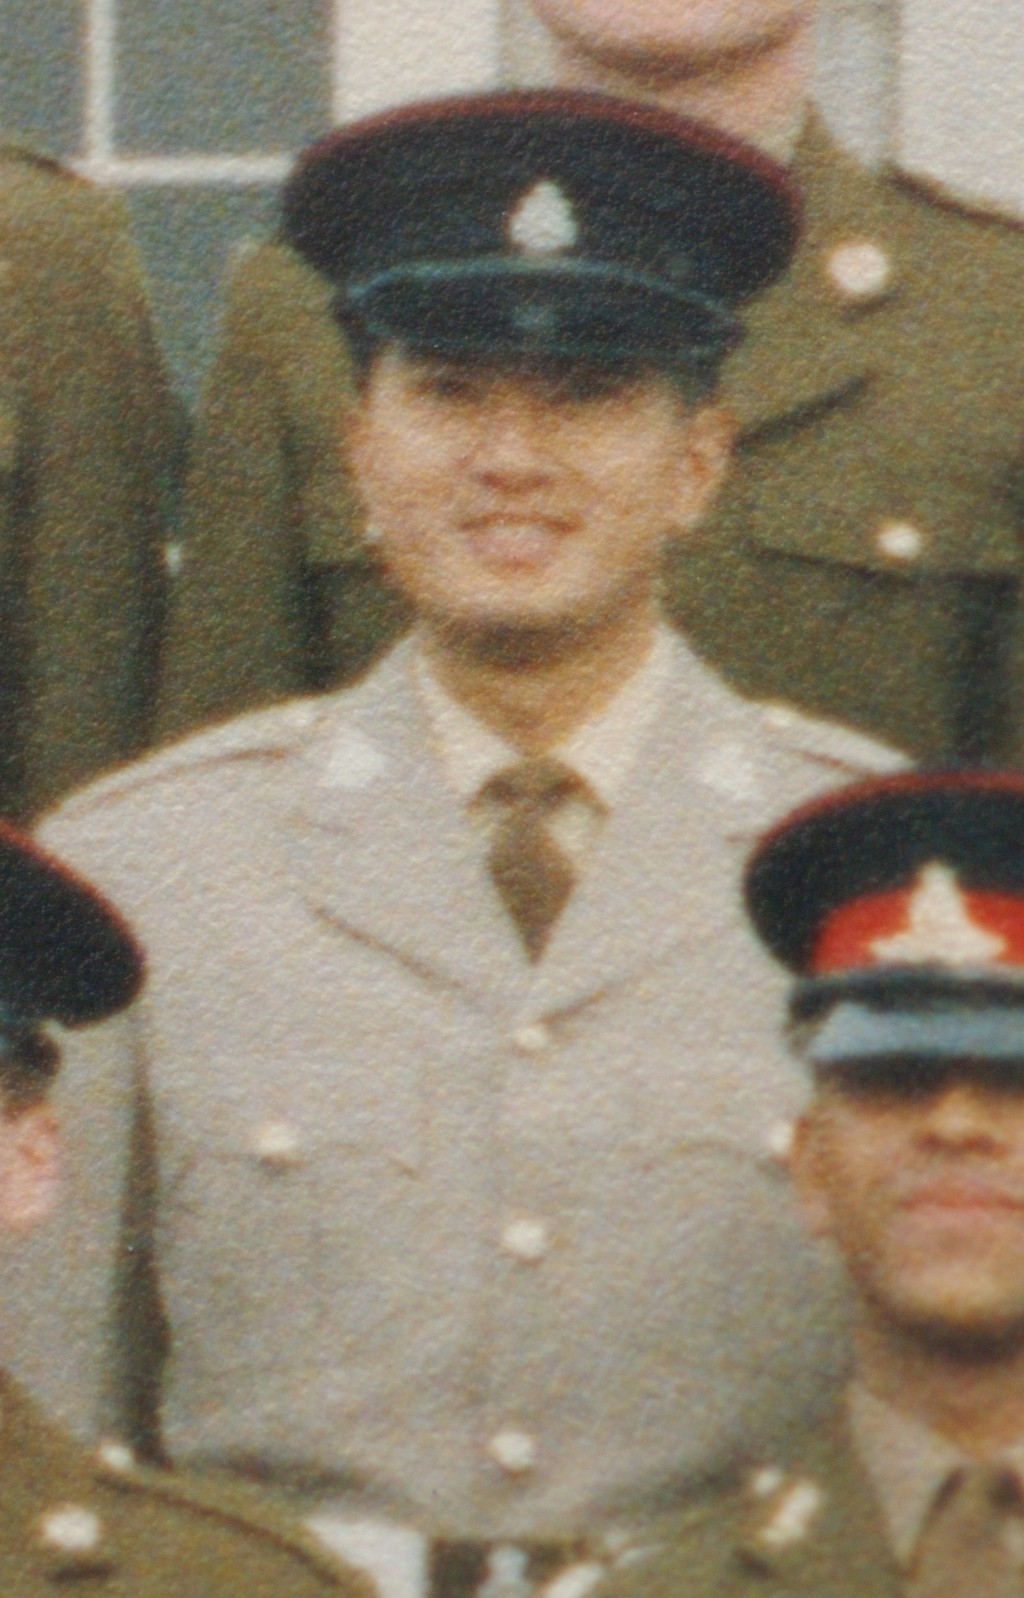 鄧梓峰年青時曾獲選到英國的The Royal Military Academy Sandhurst軍校接受半個月的軍官訓練。